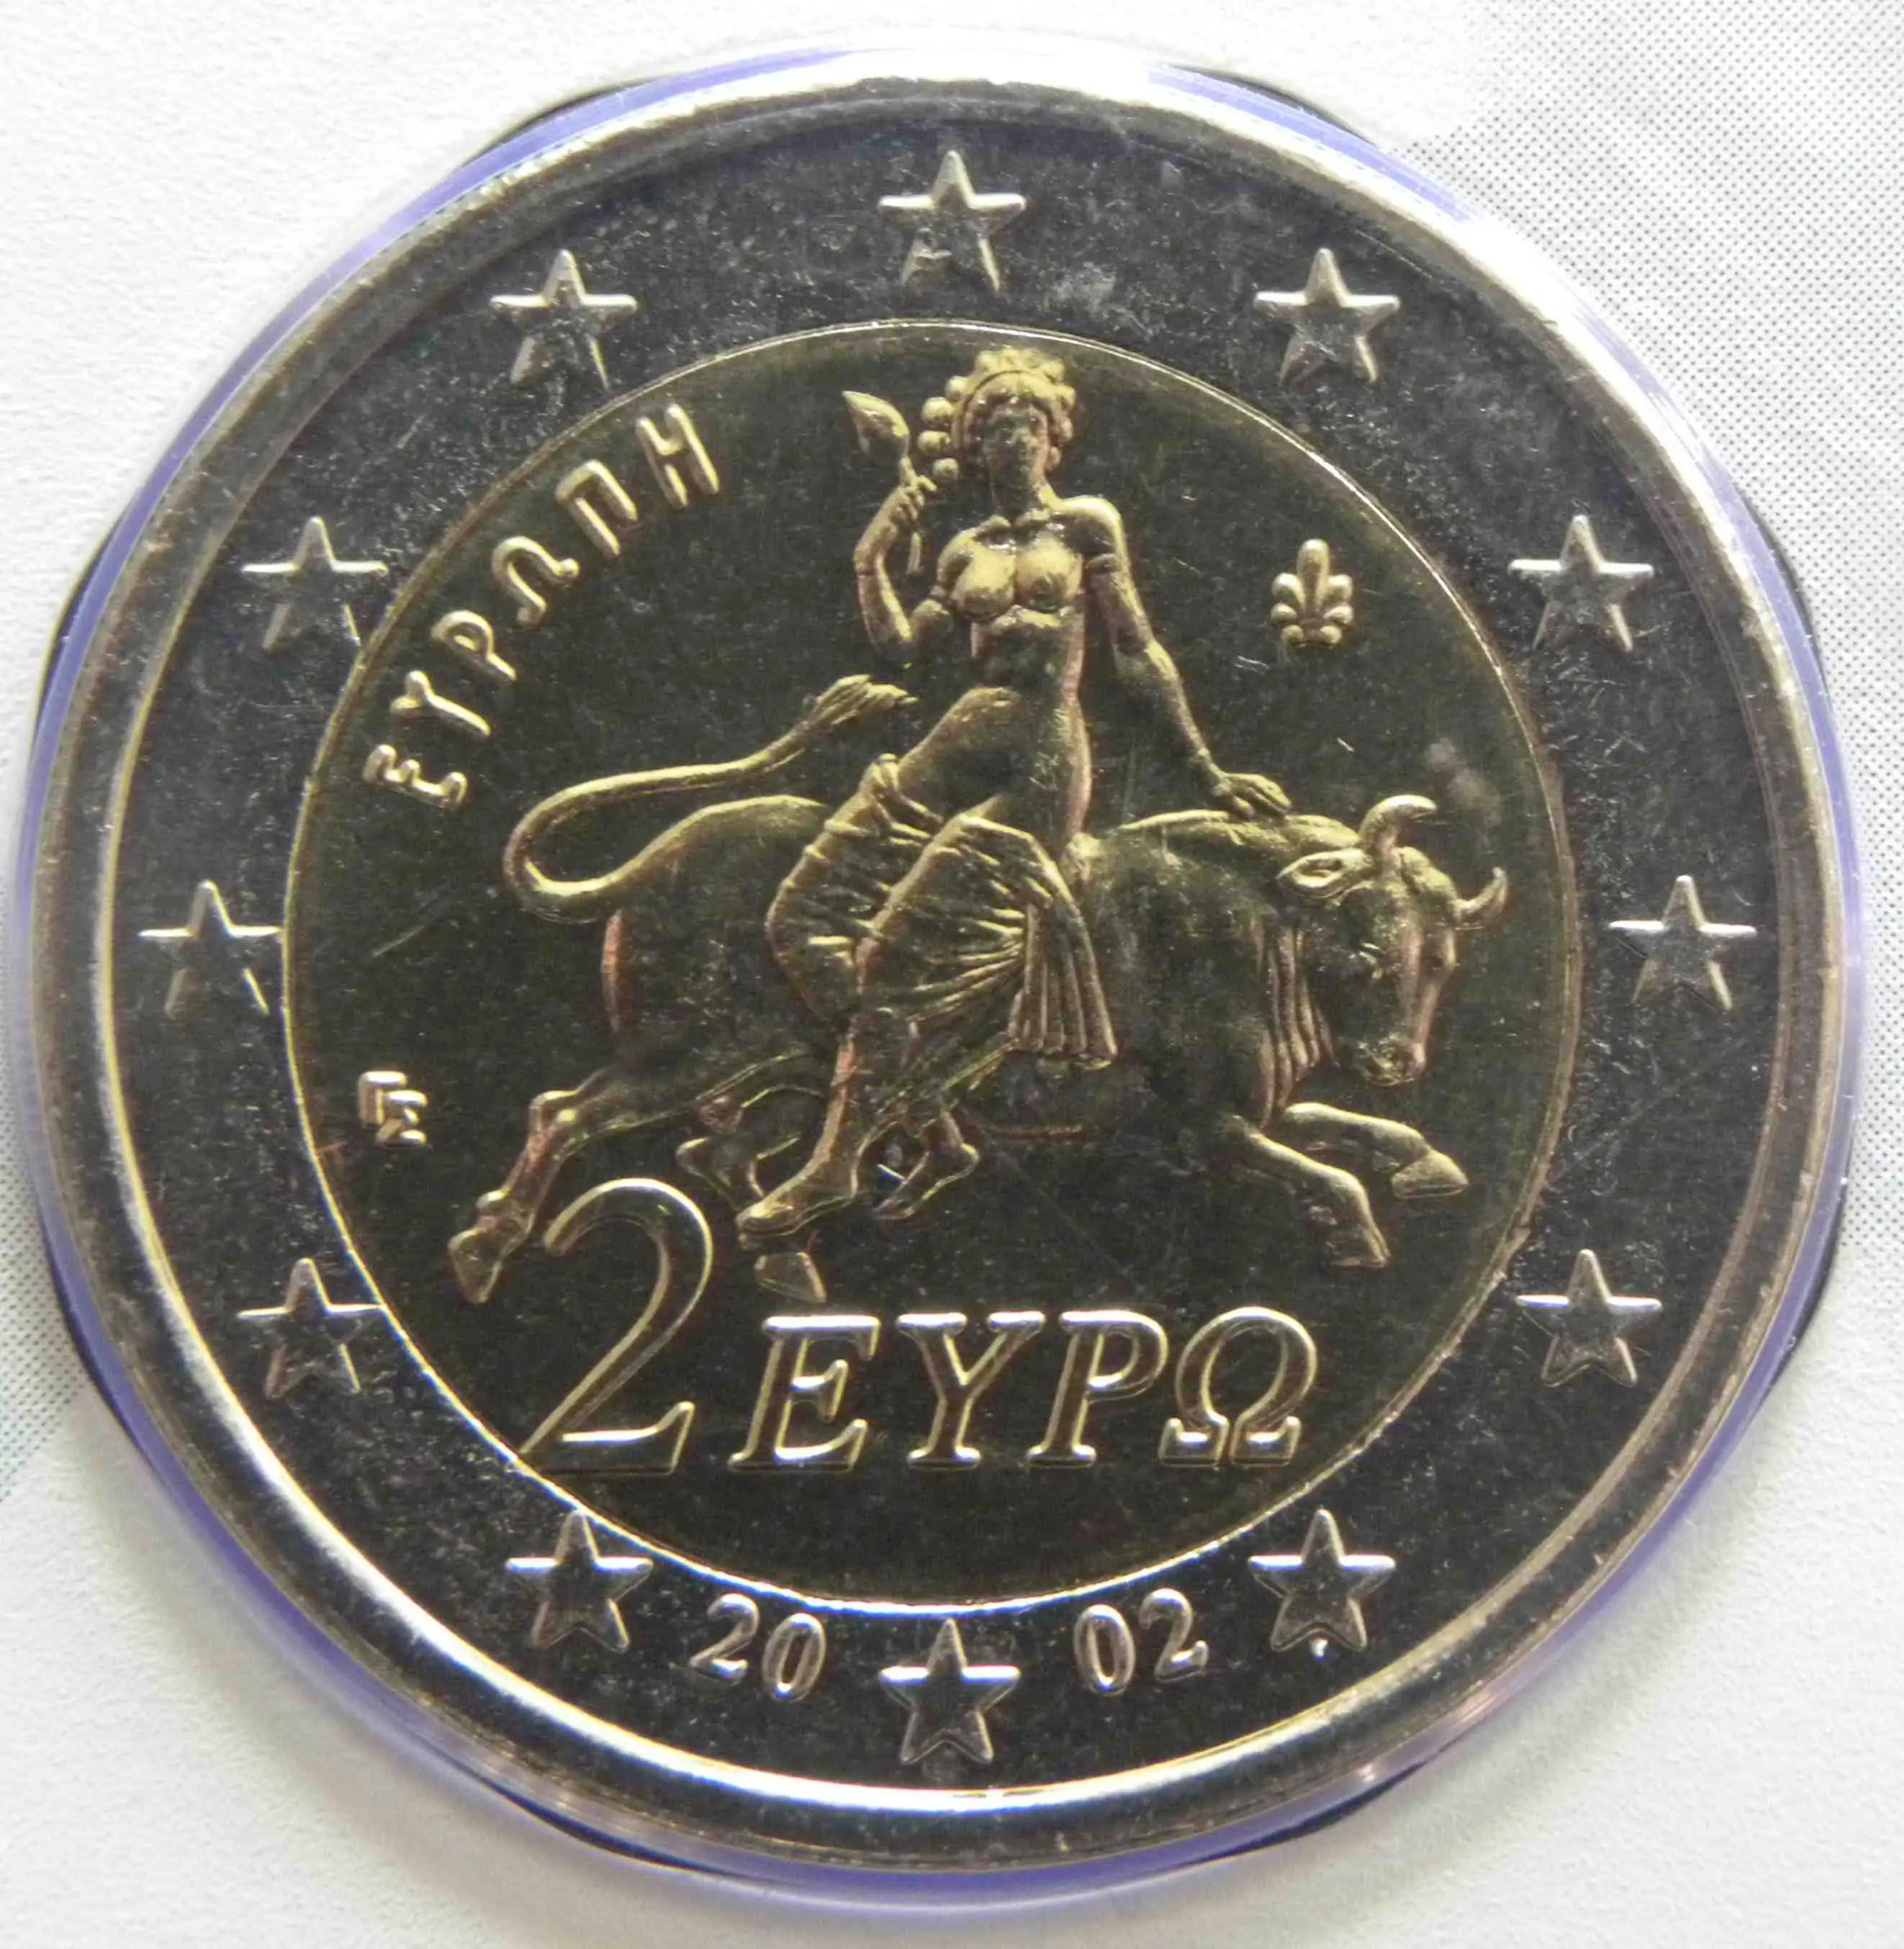 Spanische 2 Euro Münze : Seltene 1 euro münzen wert - wert : € 2 euro